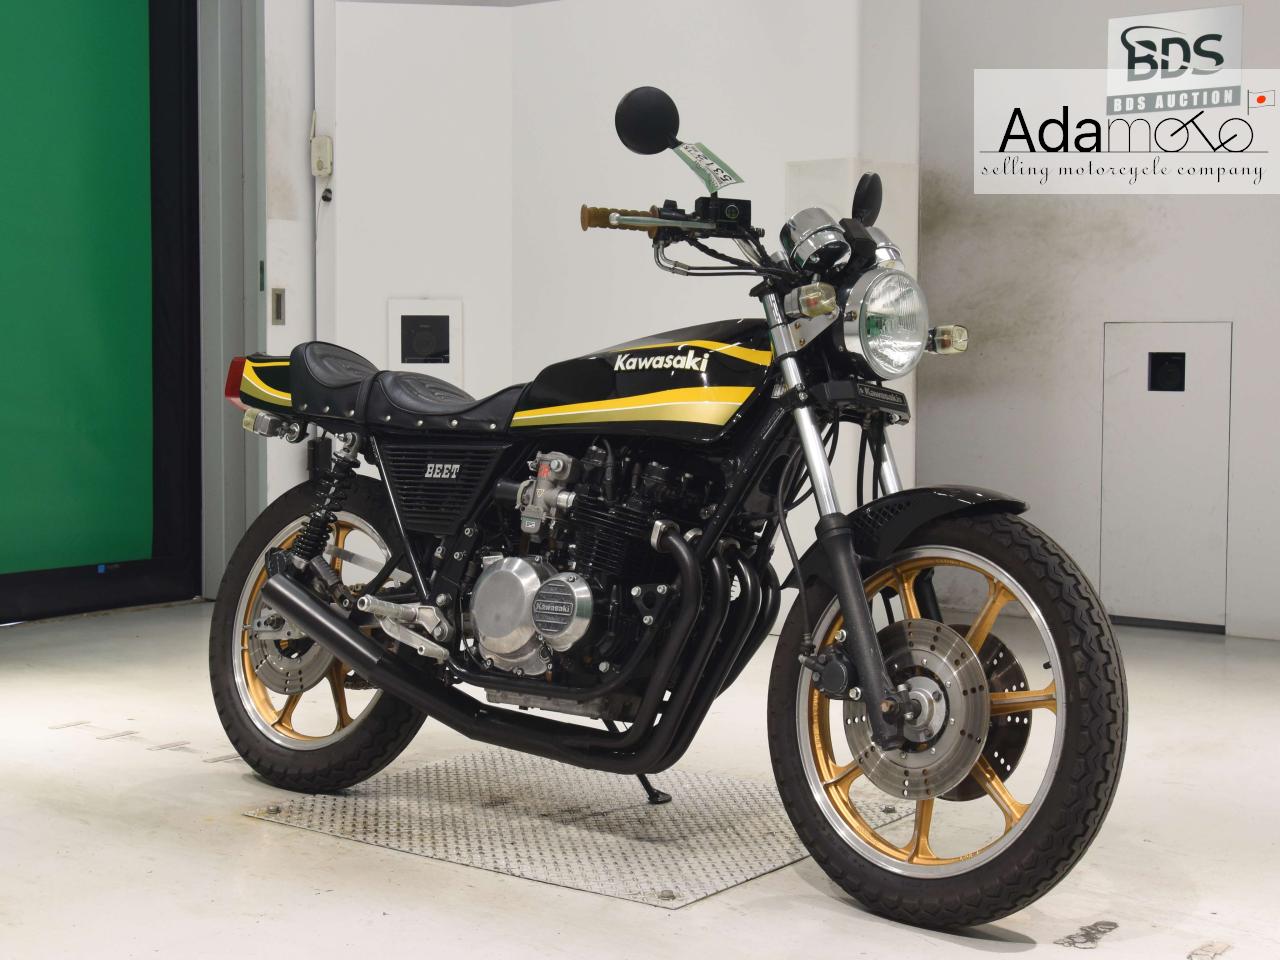 Kawasaki Z500 - Adamoto - Motorcycles from Japan